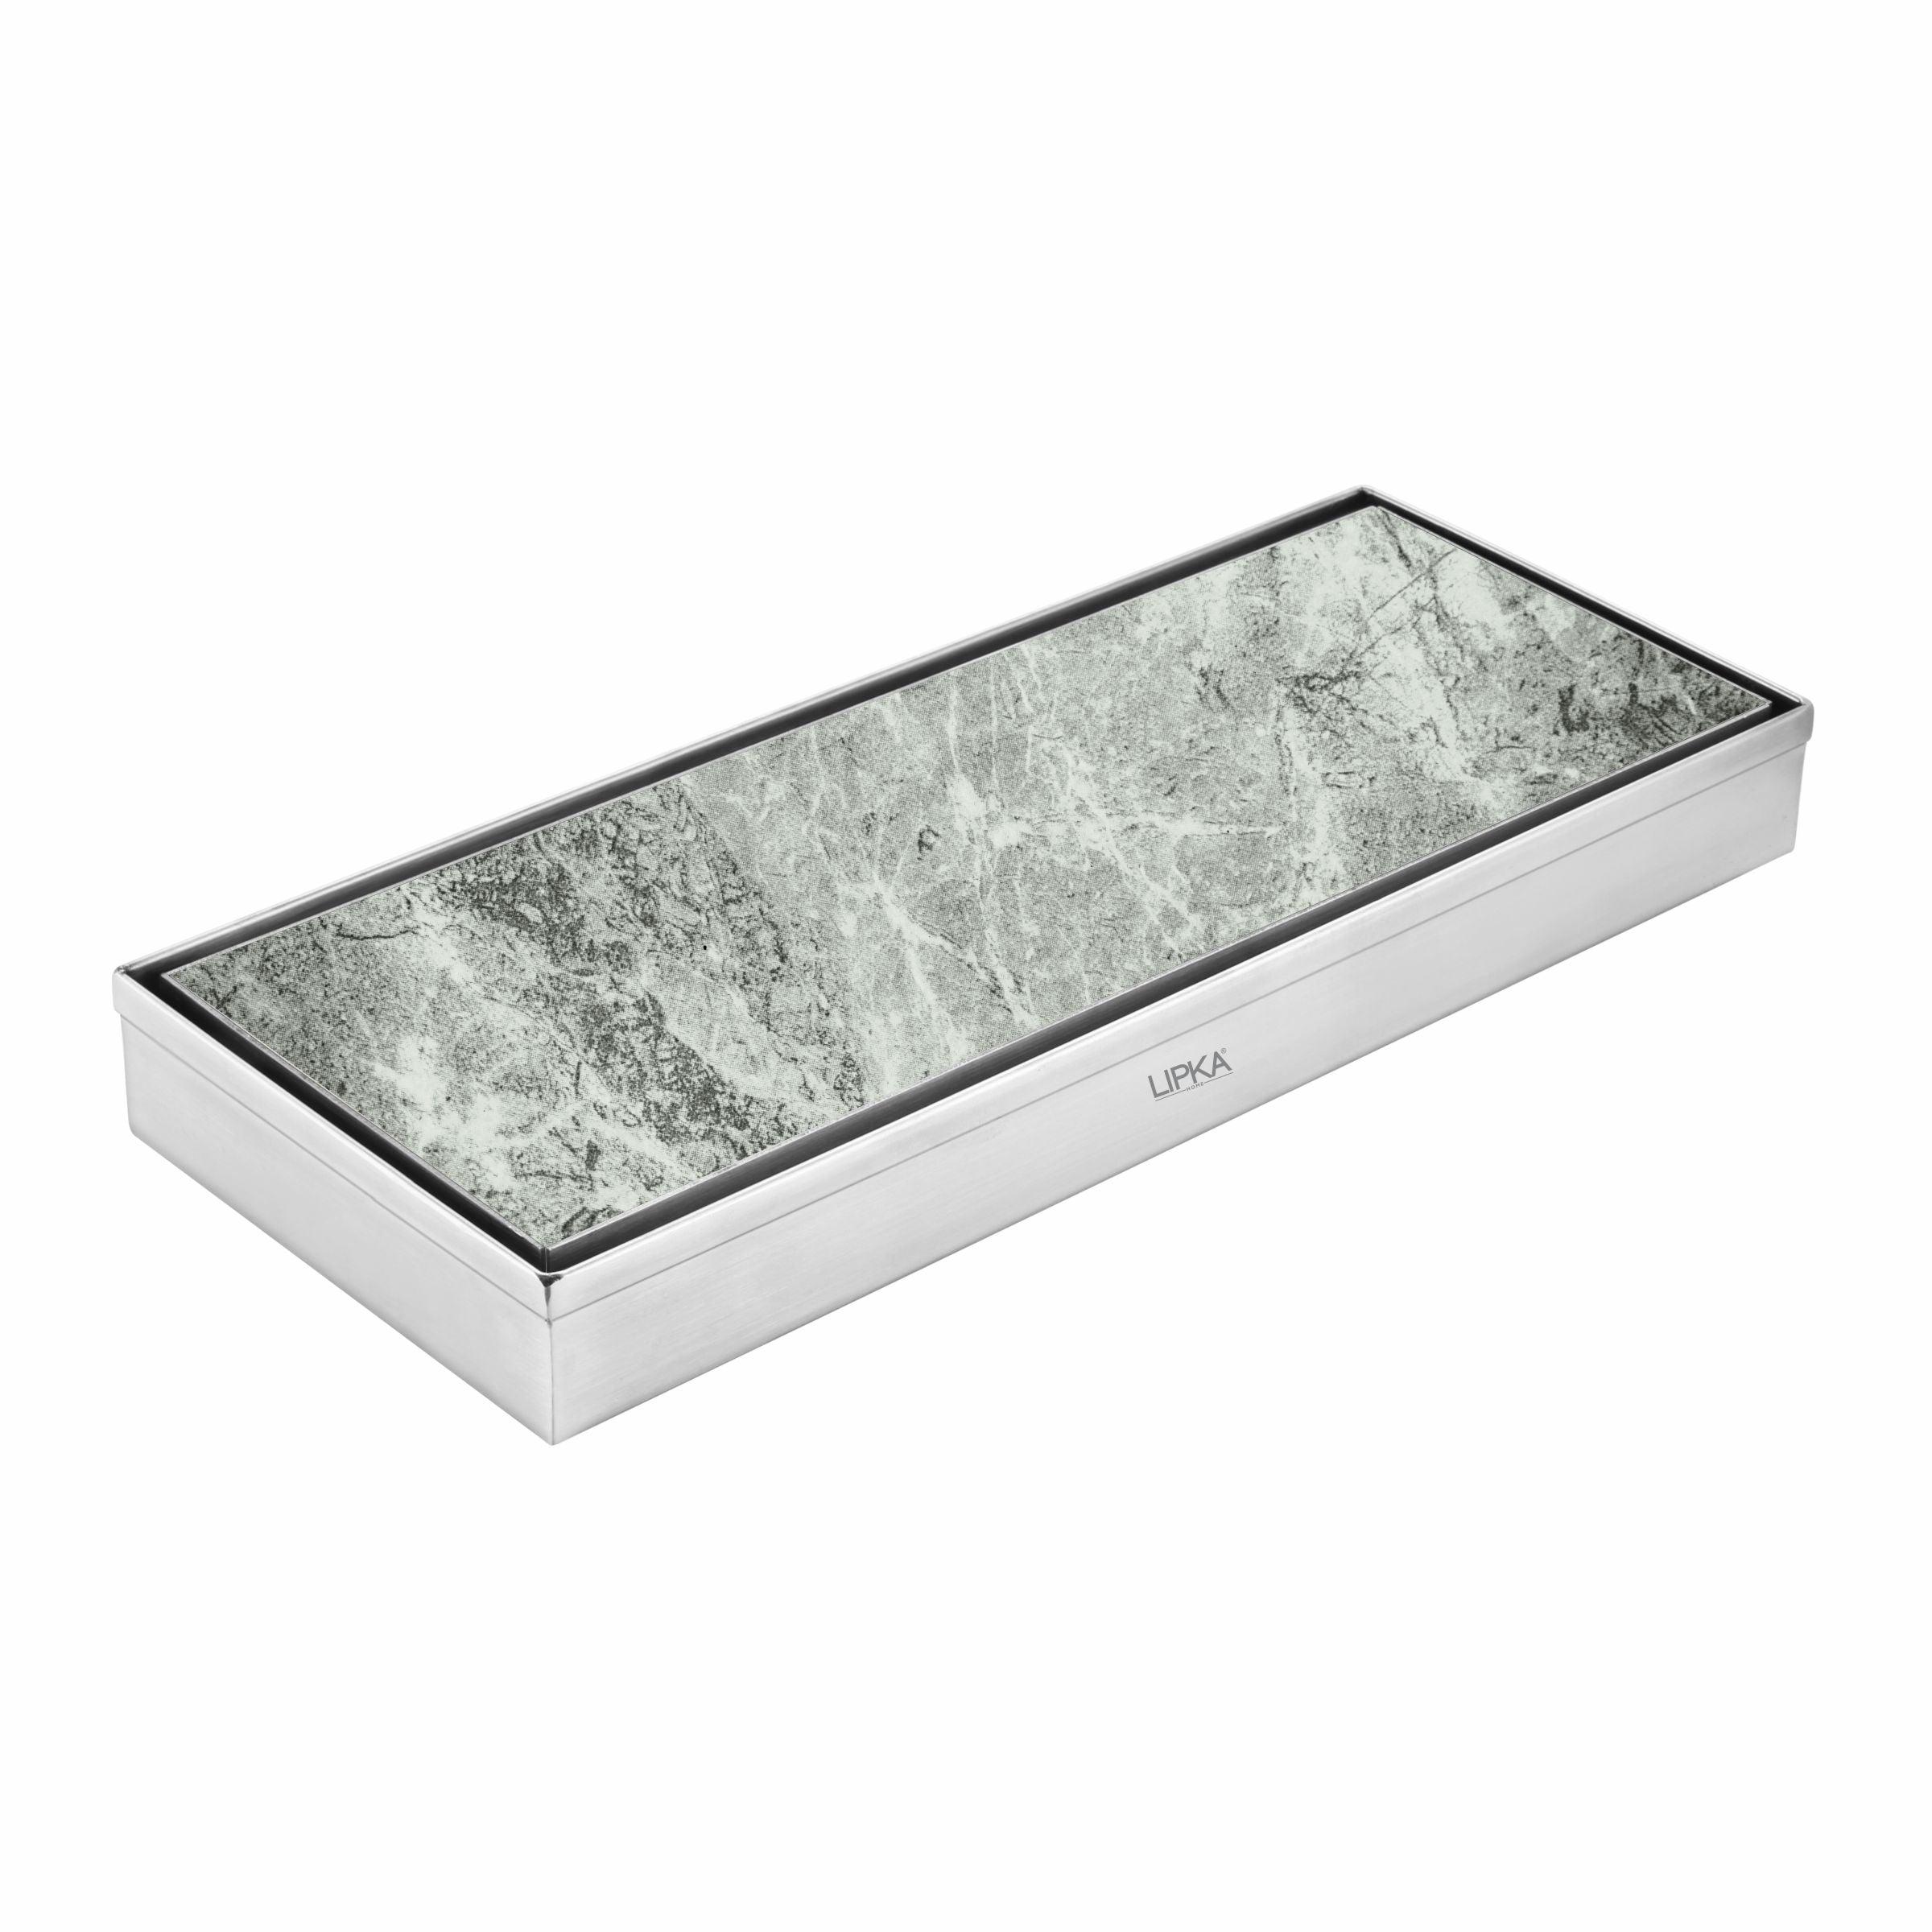 Tile Insert Shower Drain Channel (12 x 5 Inches) - LIPKA - Lipka Home